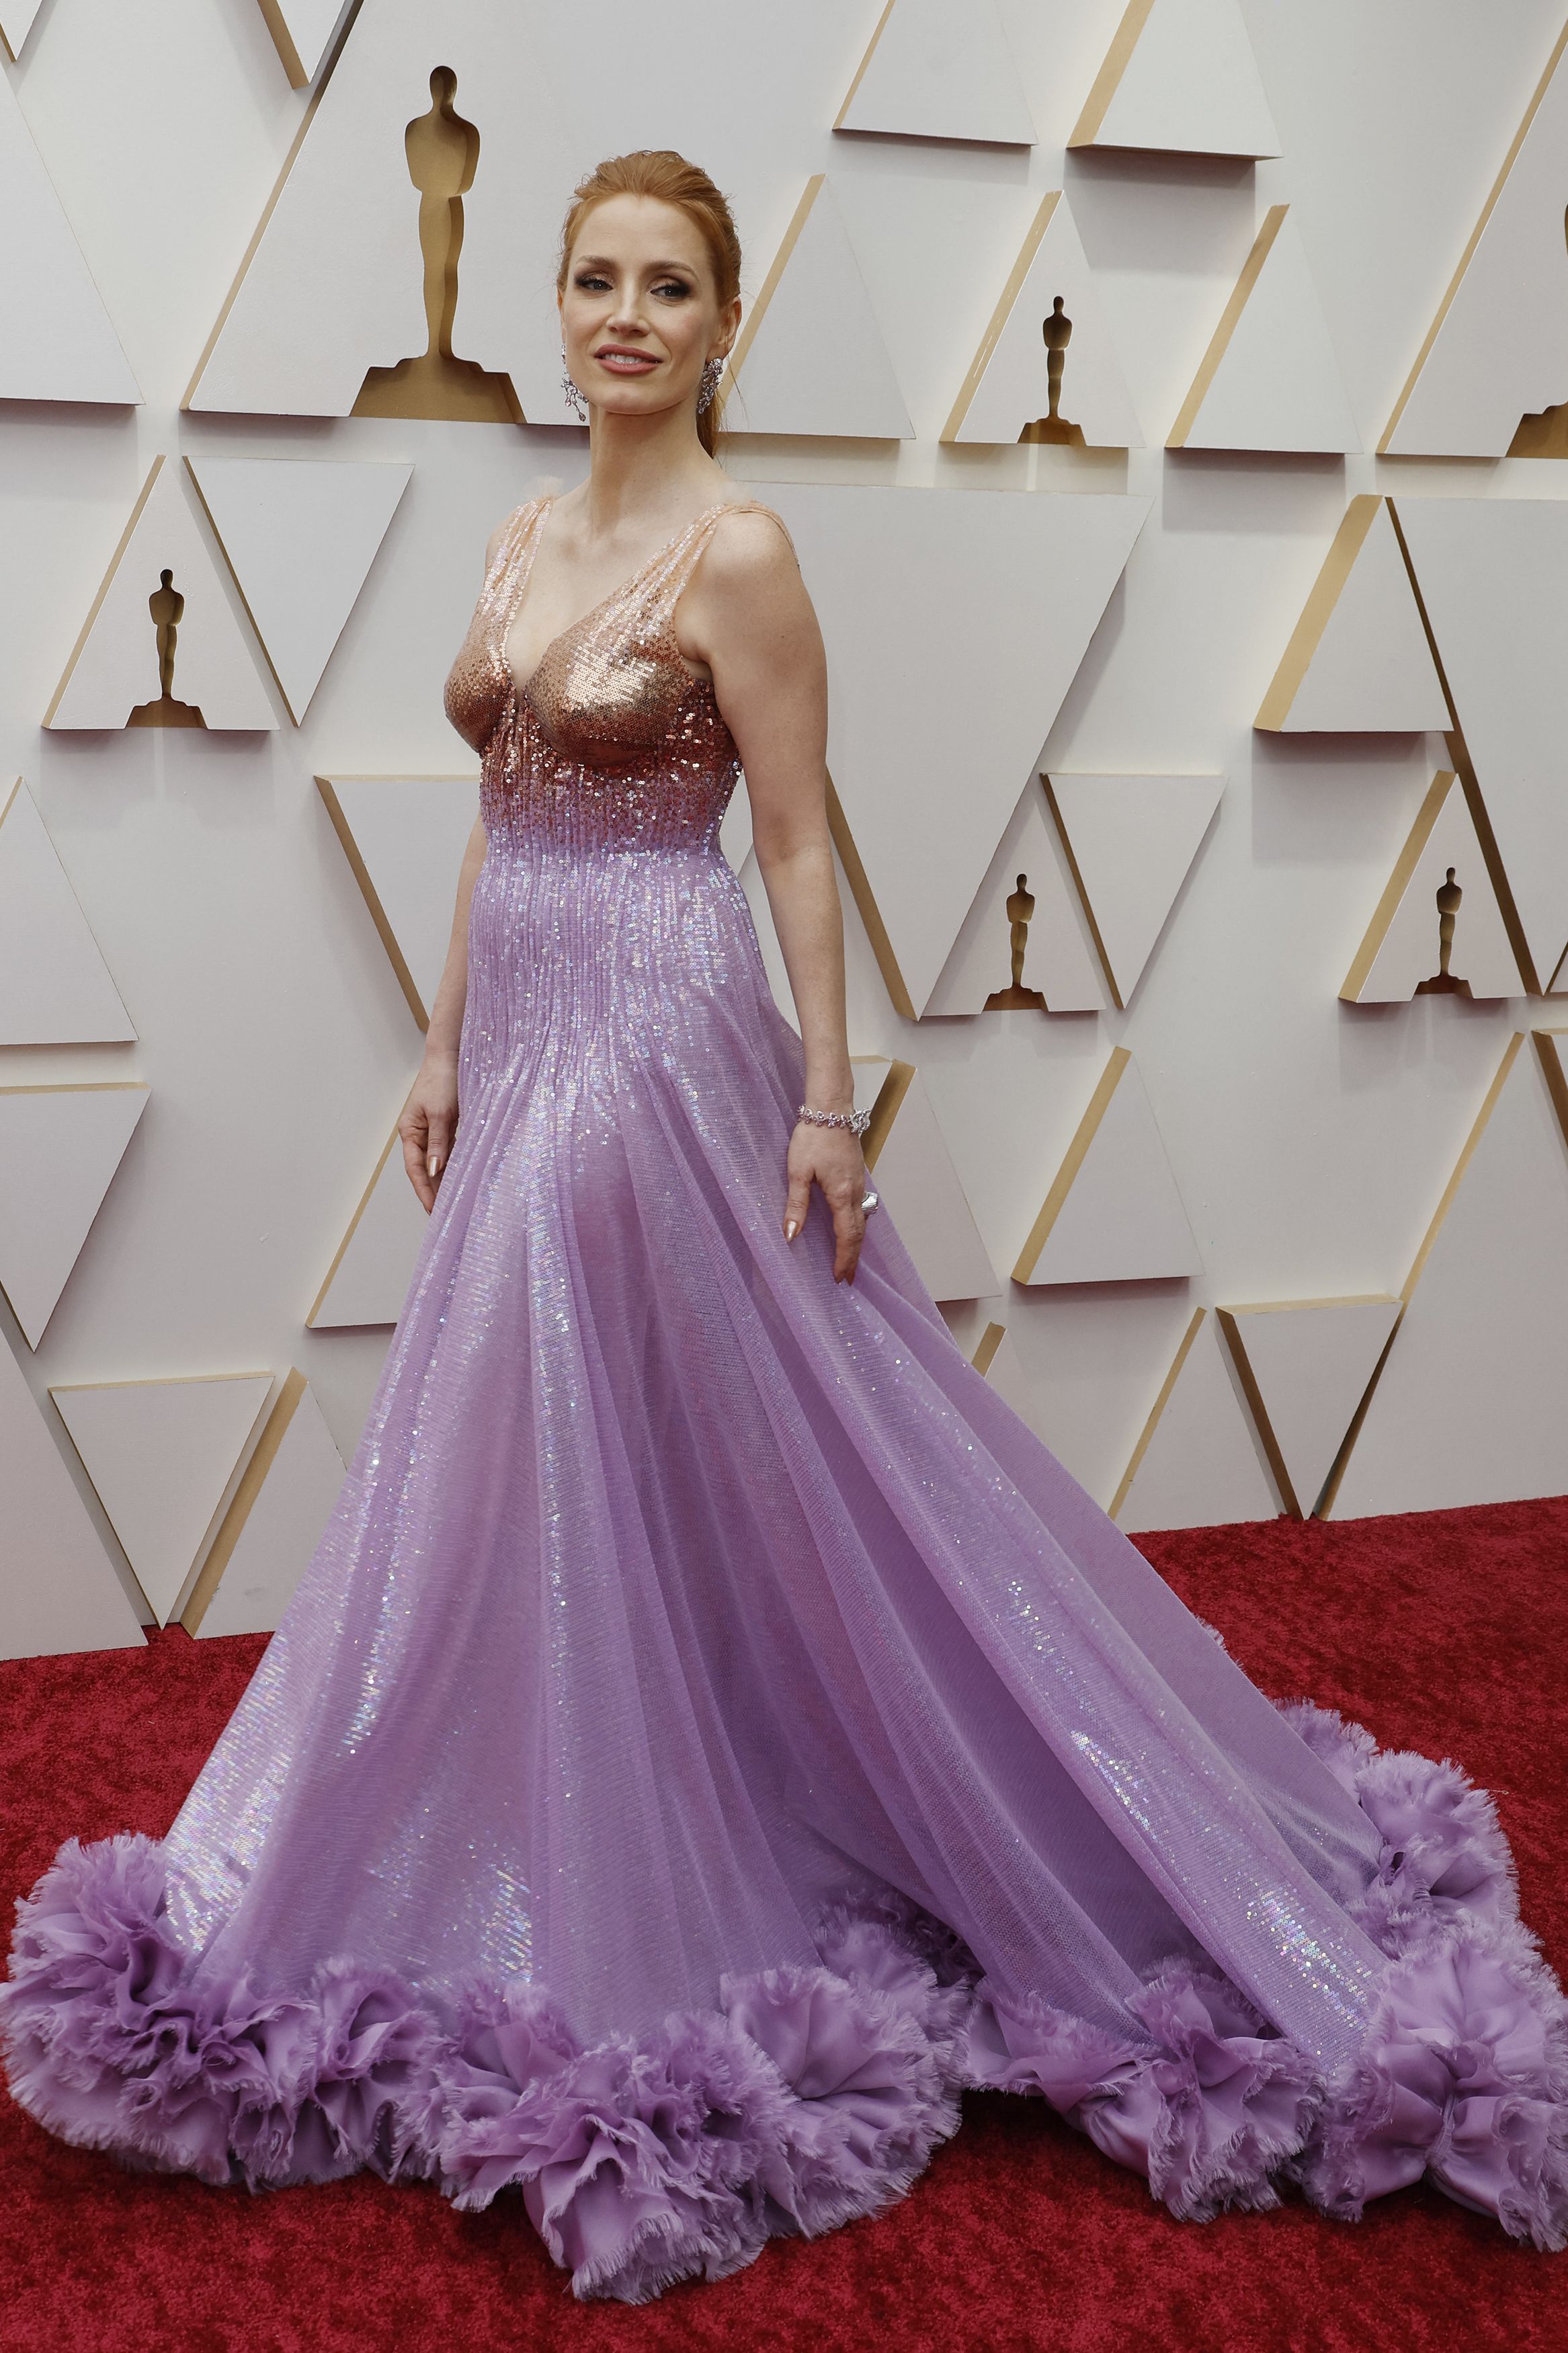 La nominada a mejor actriz Jessica Chastain posa en la alfombra roja durante las llegadas de los Oscar a los 94th Academy Awards en Hollywood (REUTERS/Eric Gaillard)